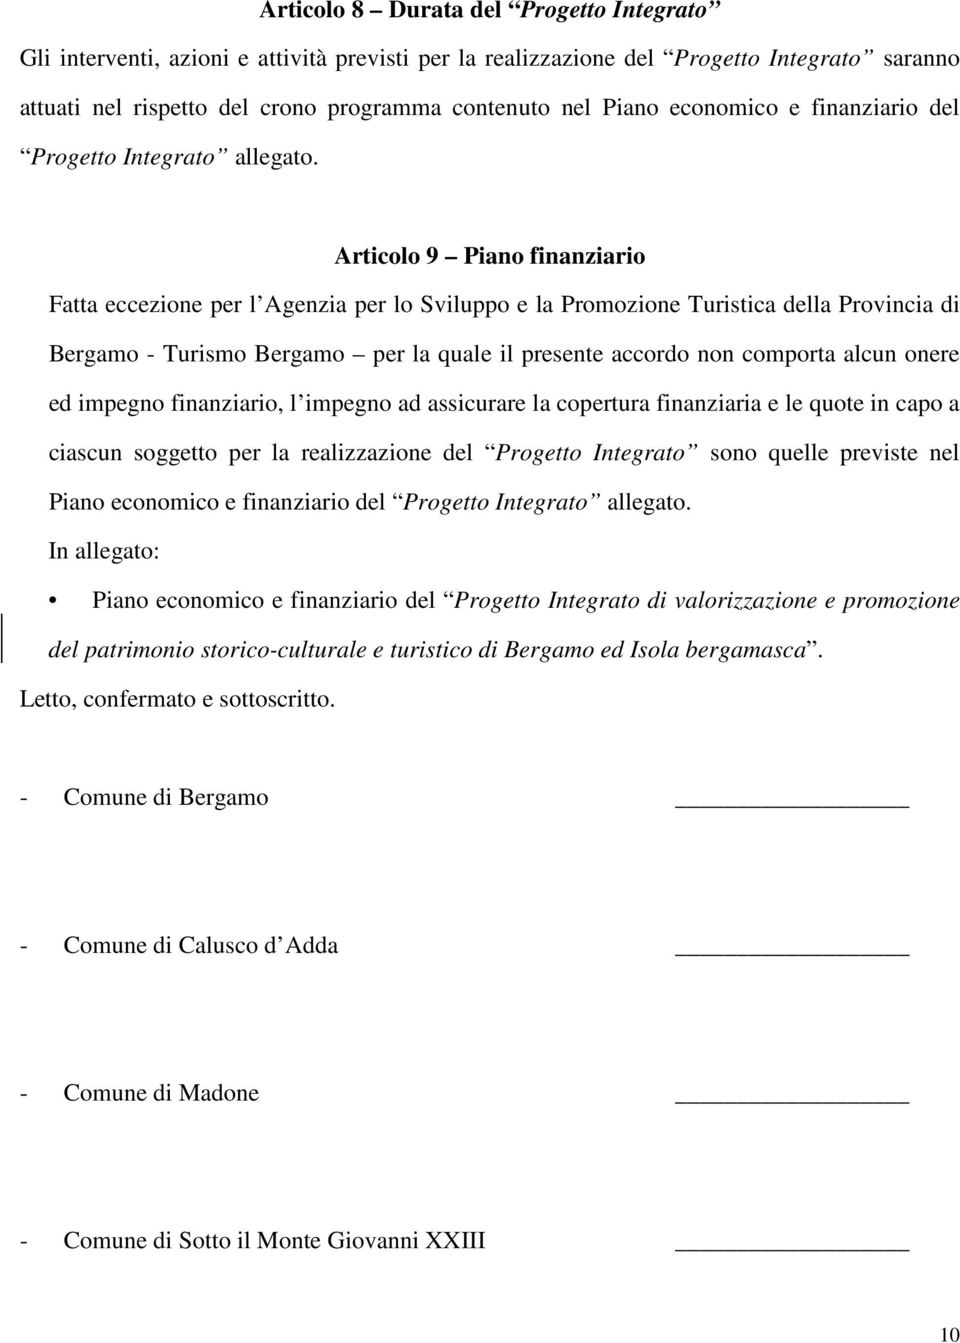 Articolo 9 Piano finanziario Fatta eccezione per l Agenzia per lo Sviluppo e la Promozione Turistica della Provincia di Bergamo - Turismo Bergamo per la quale il presente accordo non comporta alcun